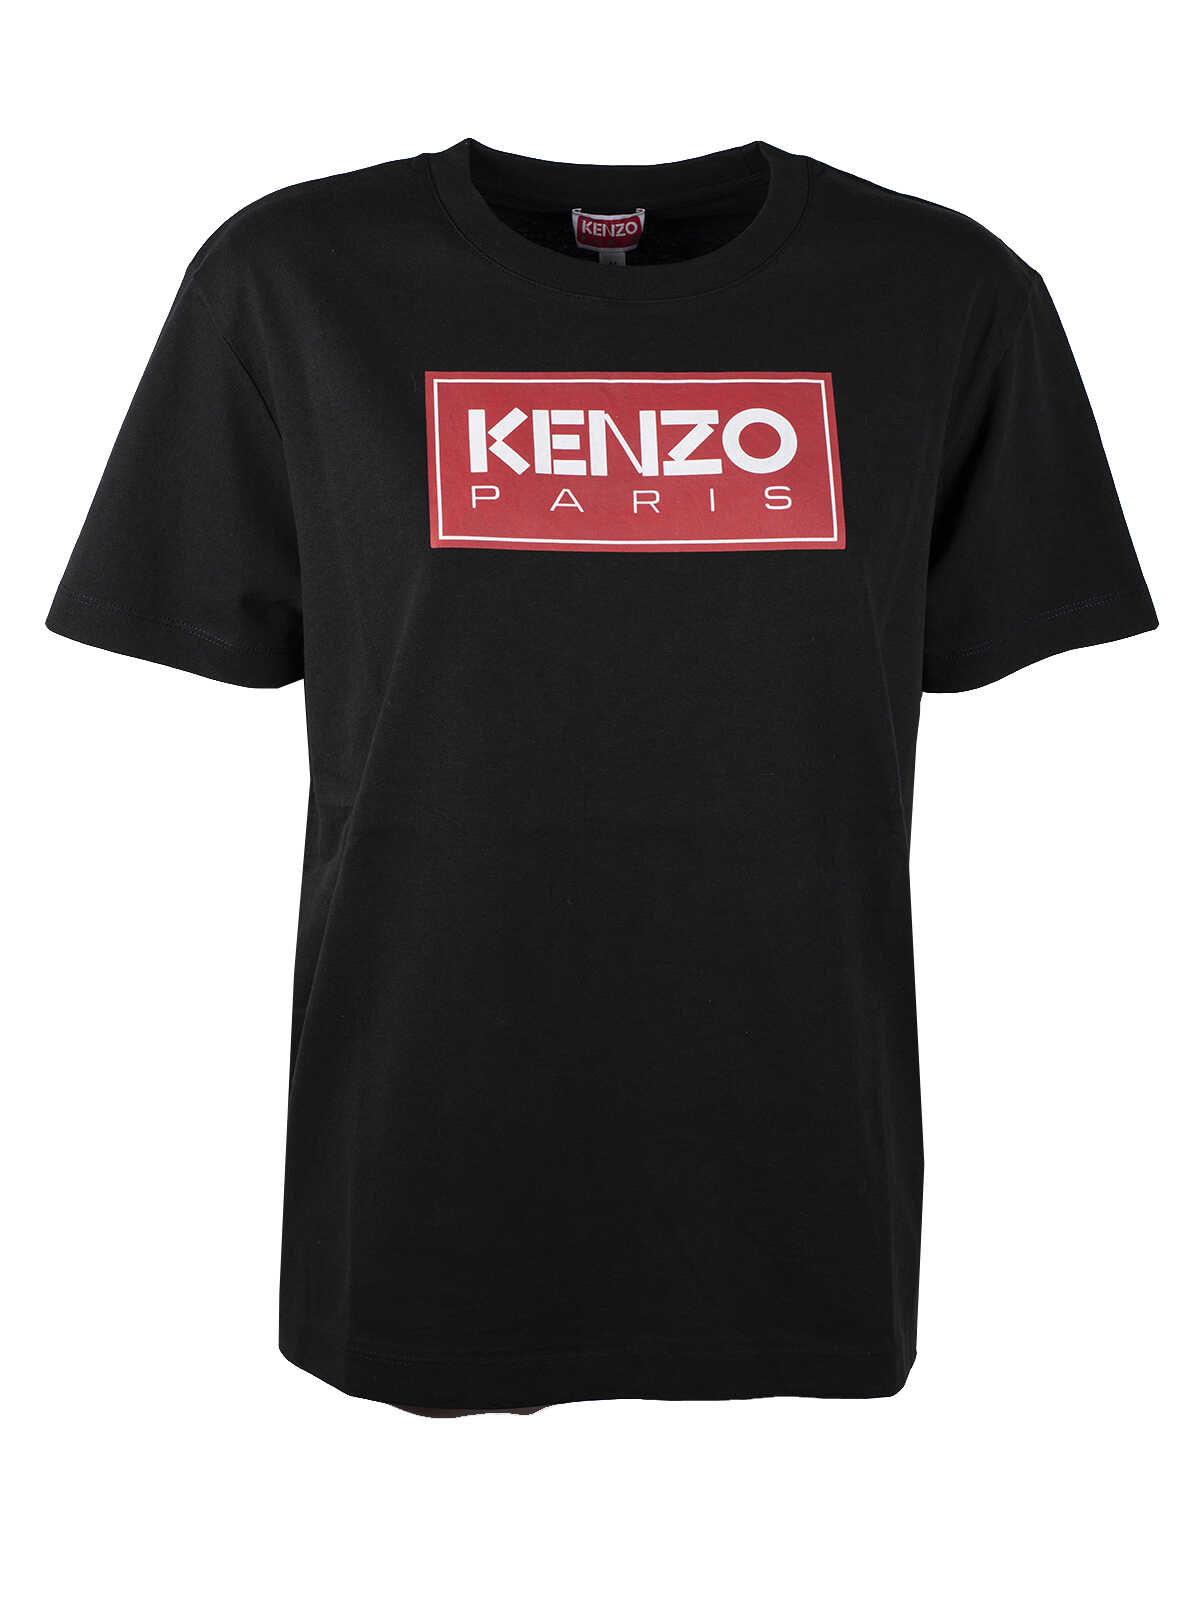 Kenzo Kenzo Paris Loose Tshirt NERO